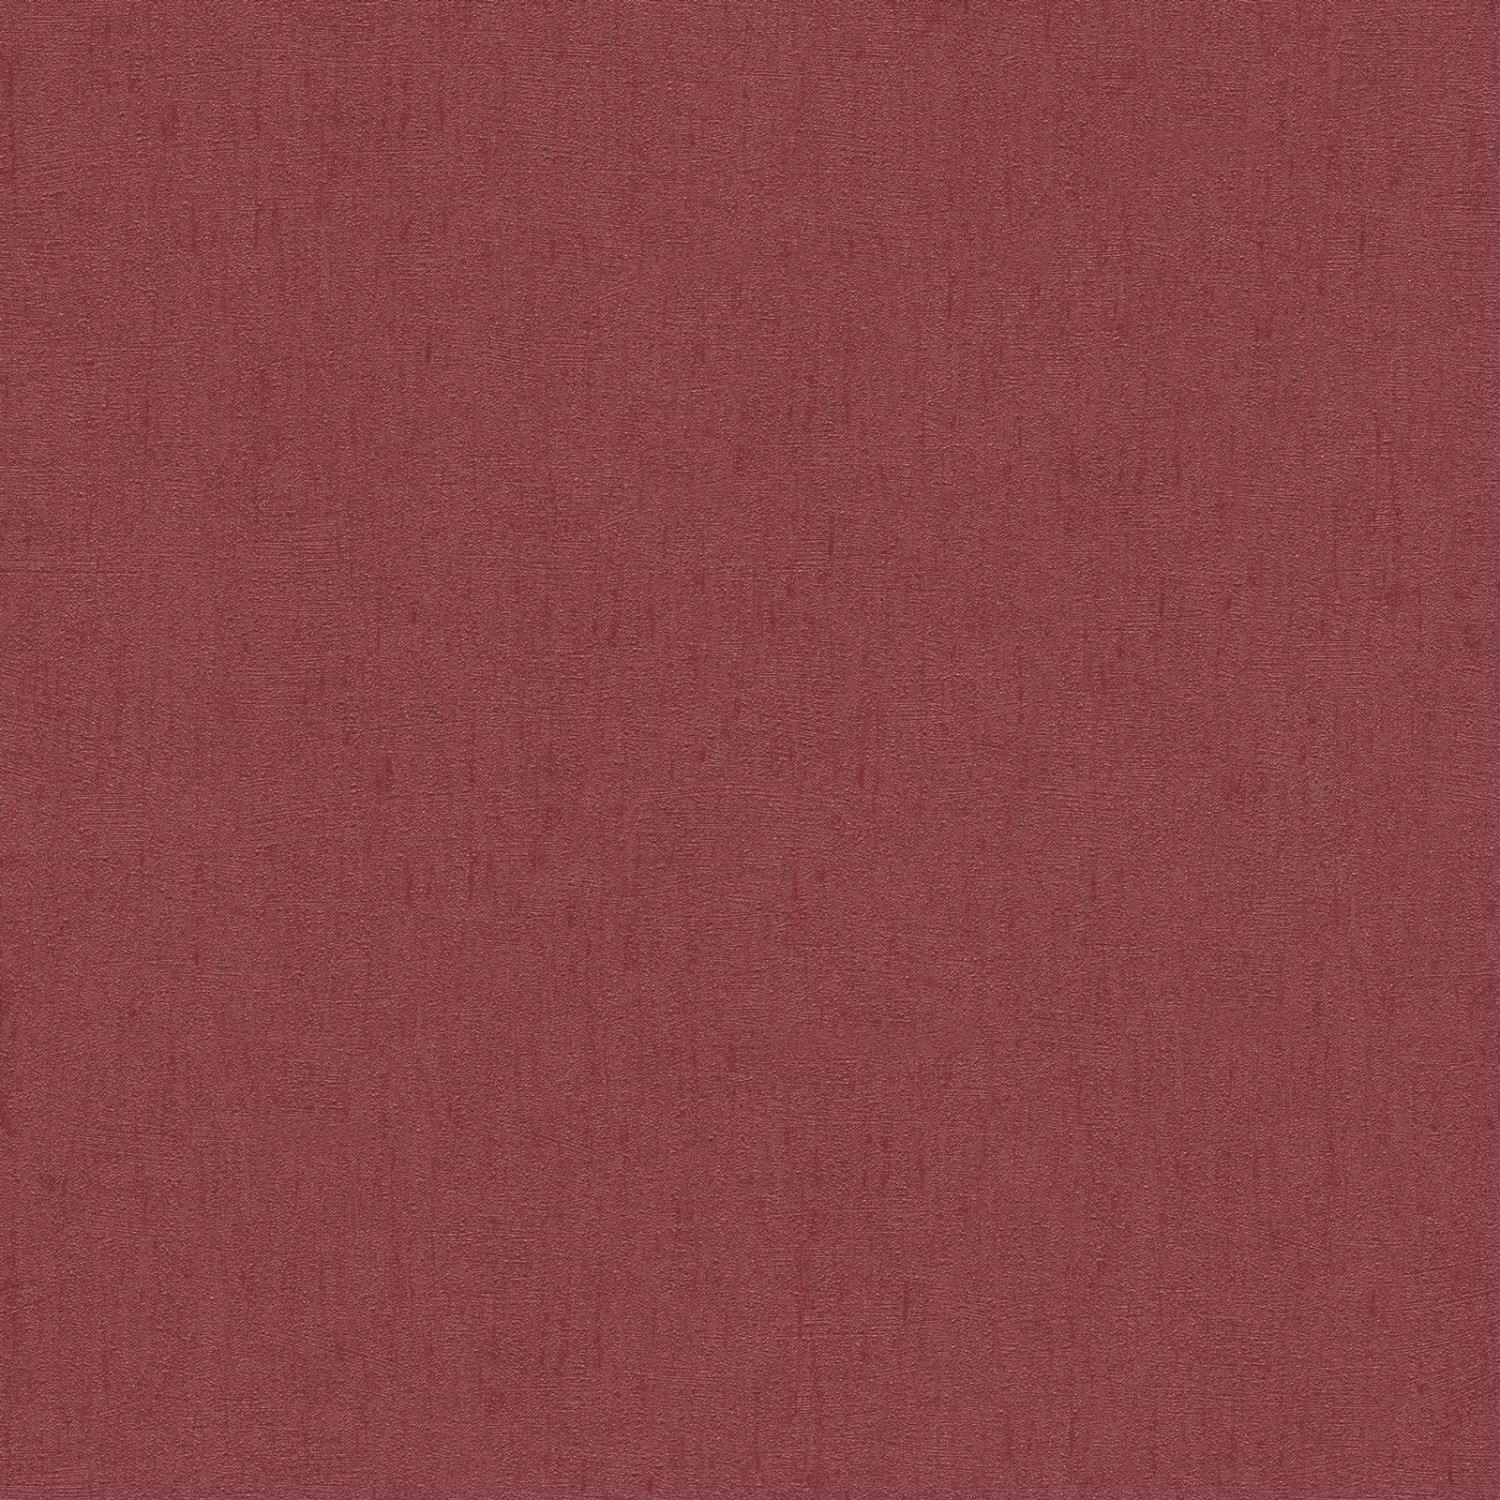 Bricoflor Bordeaux Tapete Einfarbig Rote Vliestapete Dezent Ideal für Wohnzimmer und Schlafzimmer Uni Wandtapete in Weinrot mit Vinyl von Bricoflor